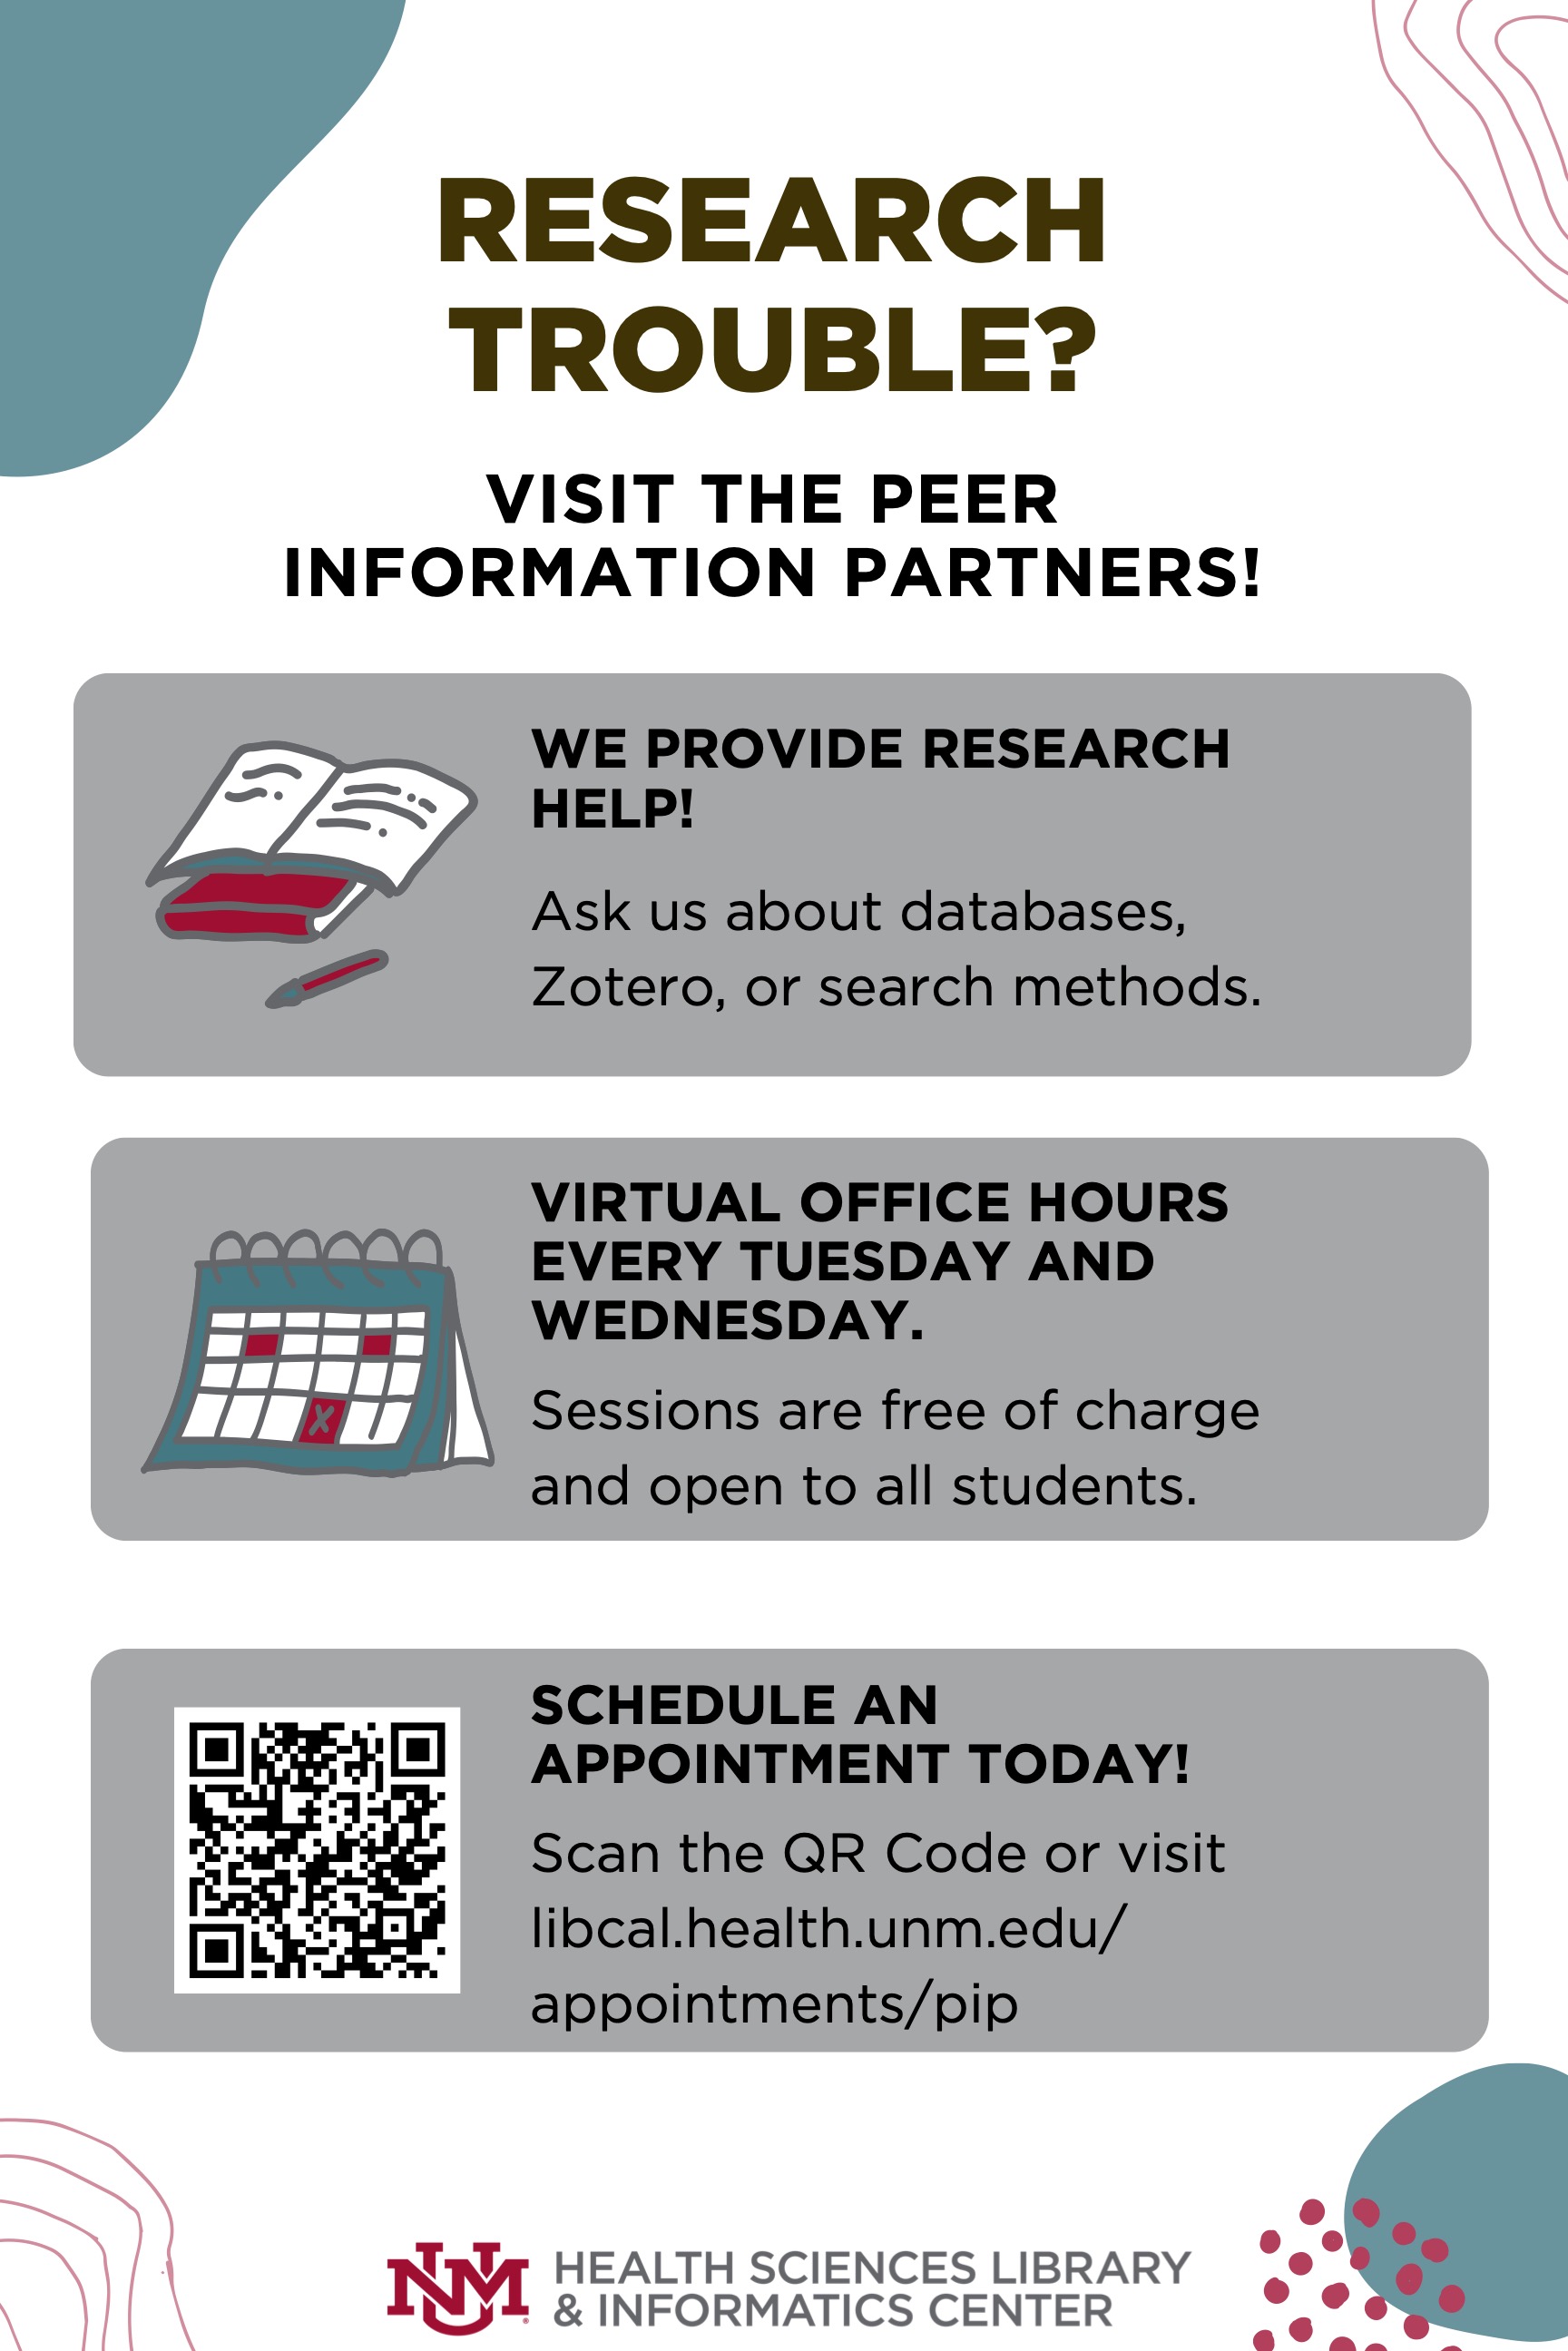 نشرة إعلانية للمساعدة البحثية في Peer Information Partners ، الجلسات مجانية وساعات عمل افتراضية كل ثلاثاء وأربعاء. قم بزيارة libcal.health.unm.edu/appointments/pip لمزيد من المعلومات